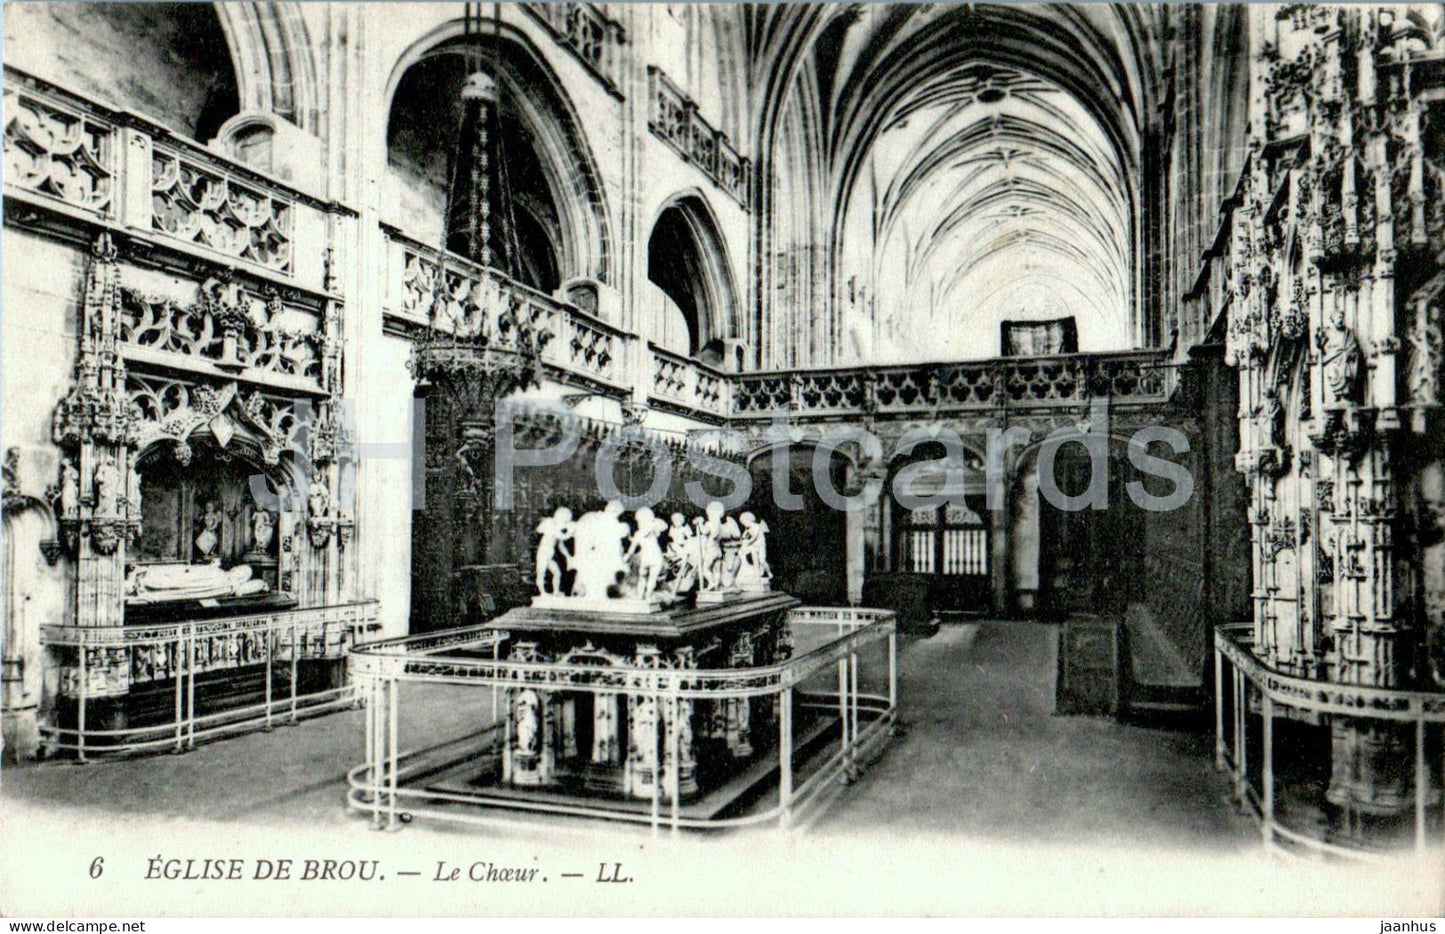 Eglise de Brou - Le Choeur - 6 - church - old postcard - France - unused - JH Postcards